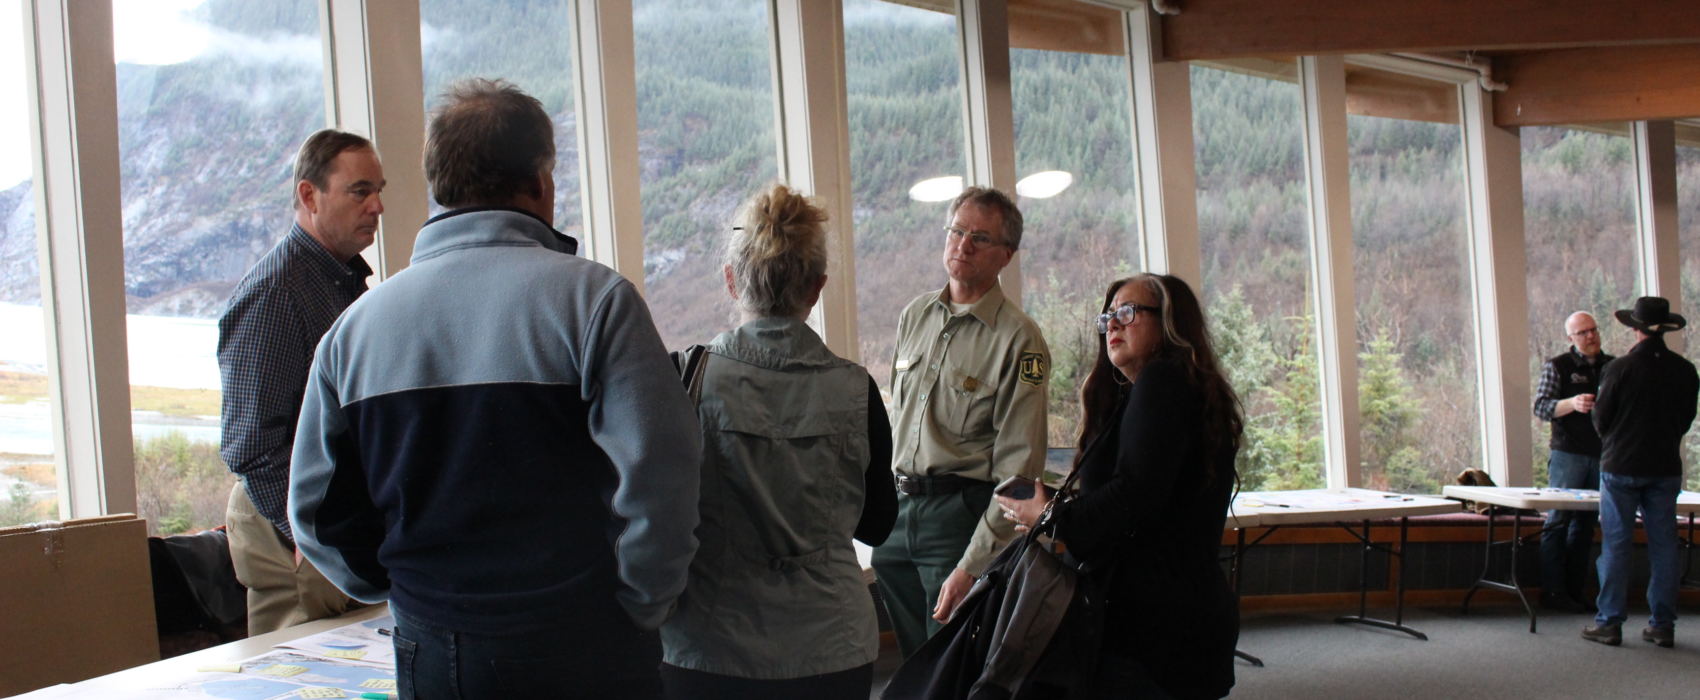 Mendenhall Glacier Visitor Center (Photo by Elizabeth Jenkins/Alaska's Energy Desk)